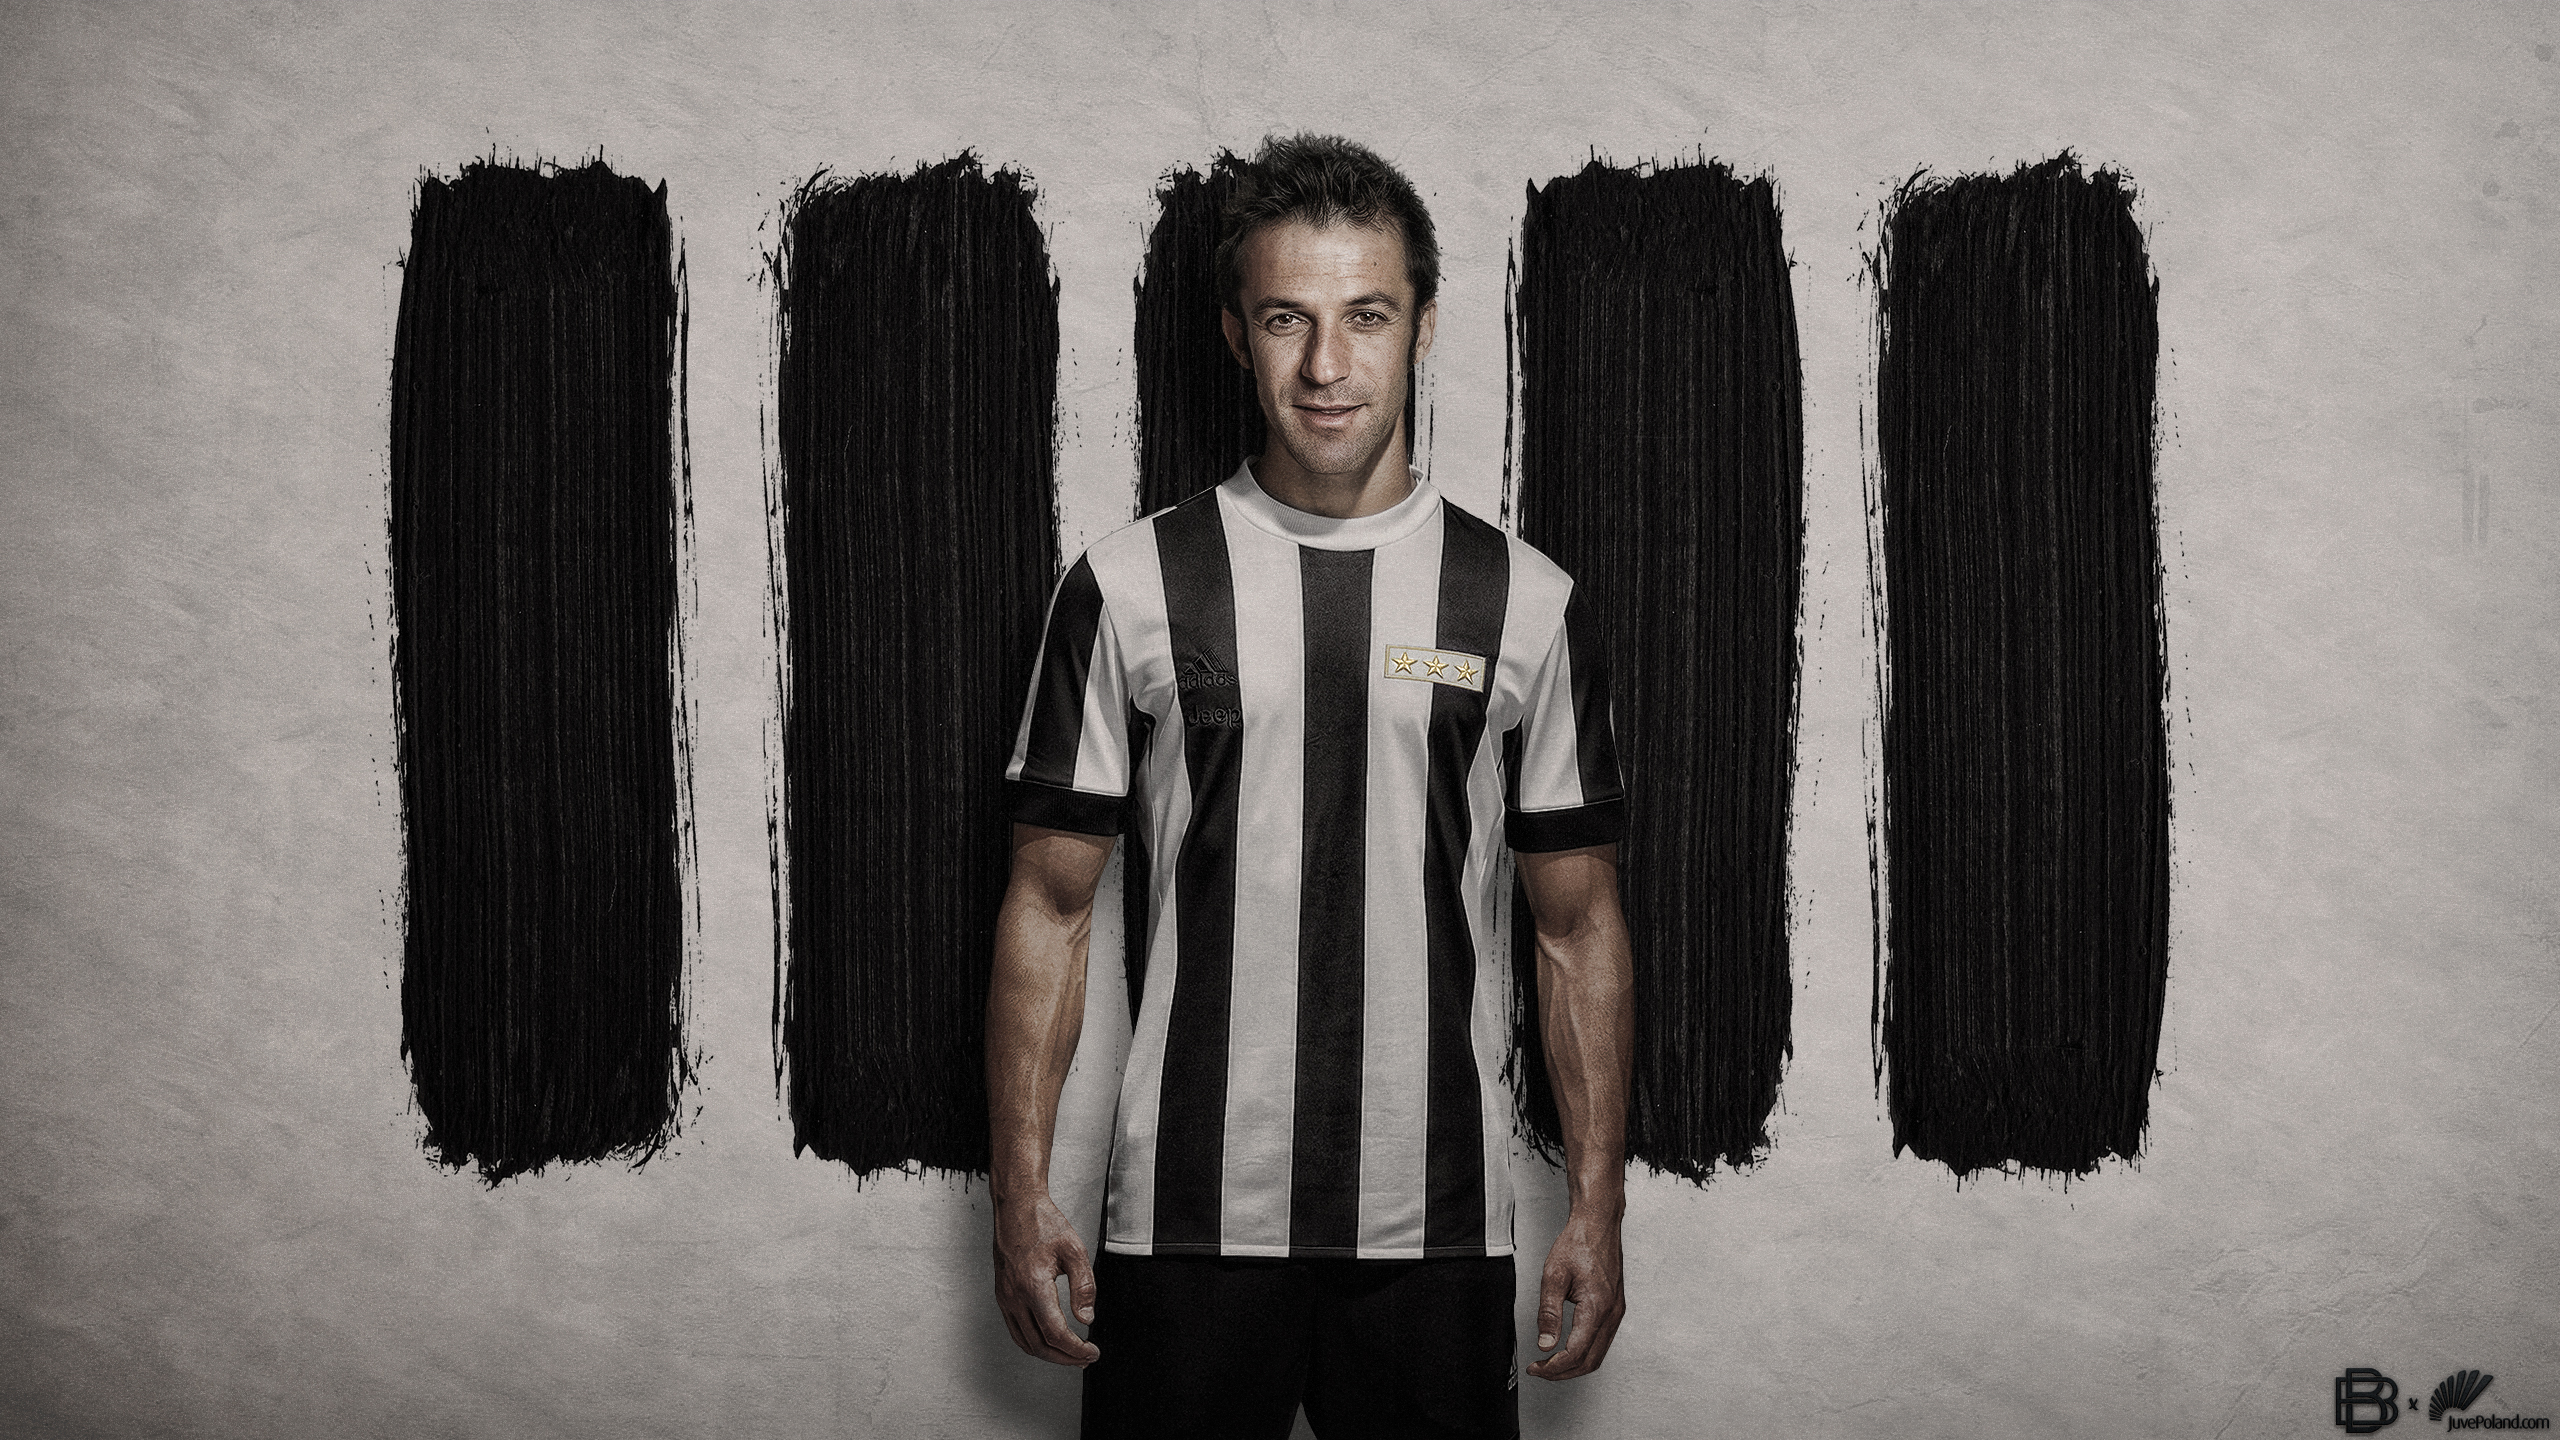 Sports Alessandro Del Piero HD Wallpaper | Background Image